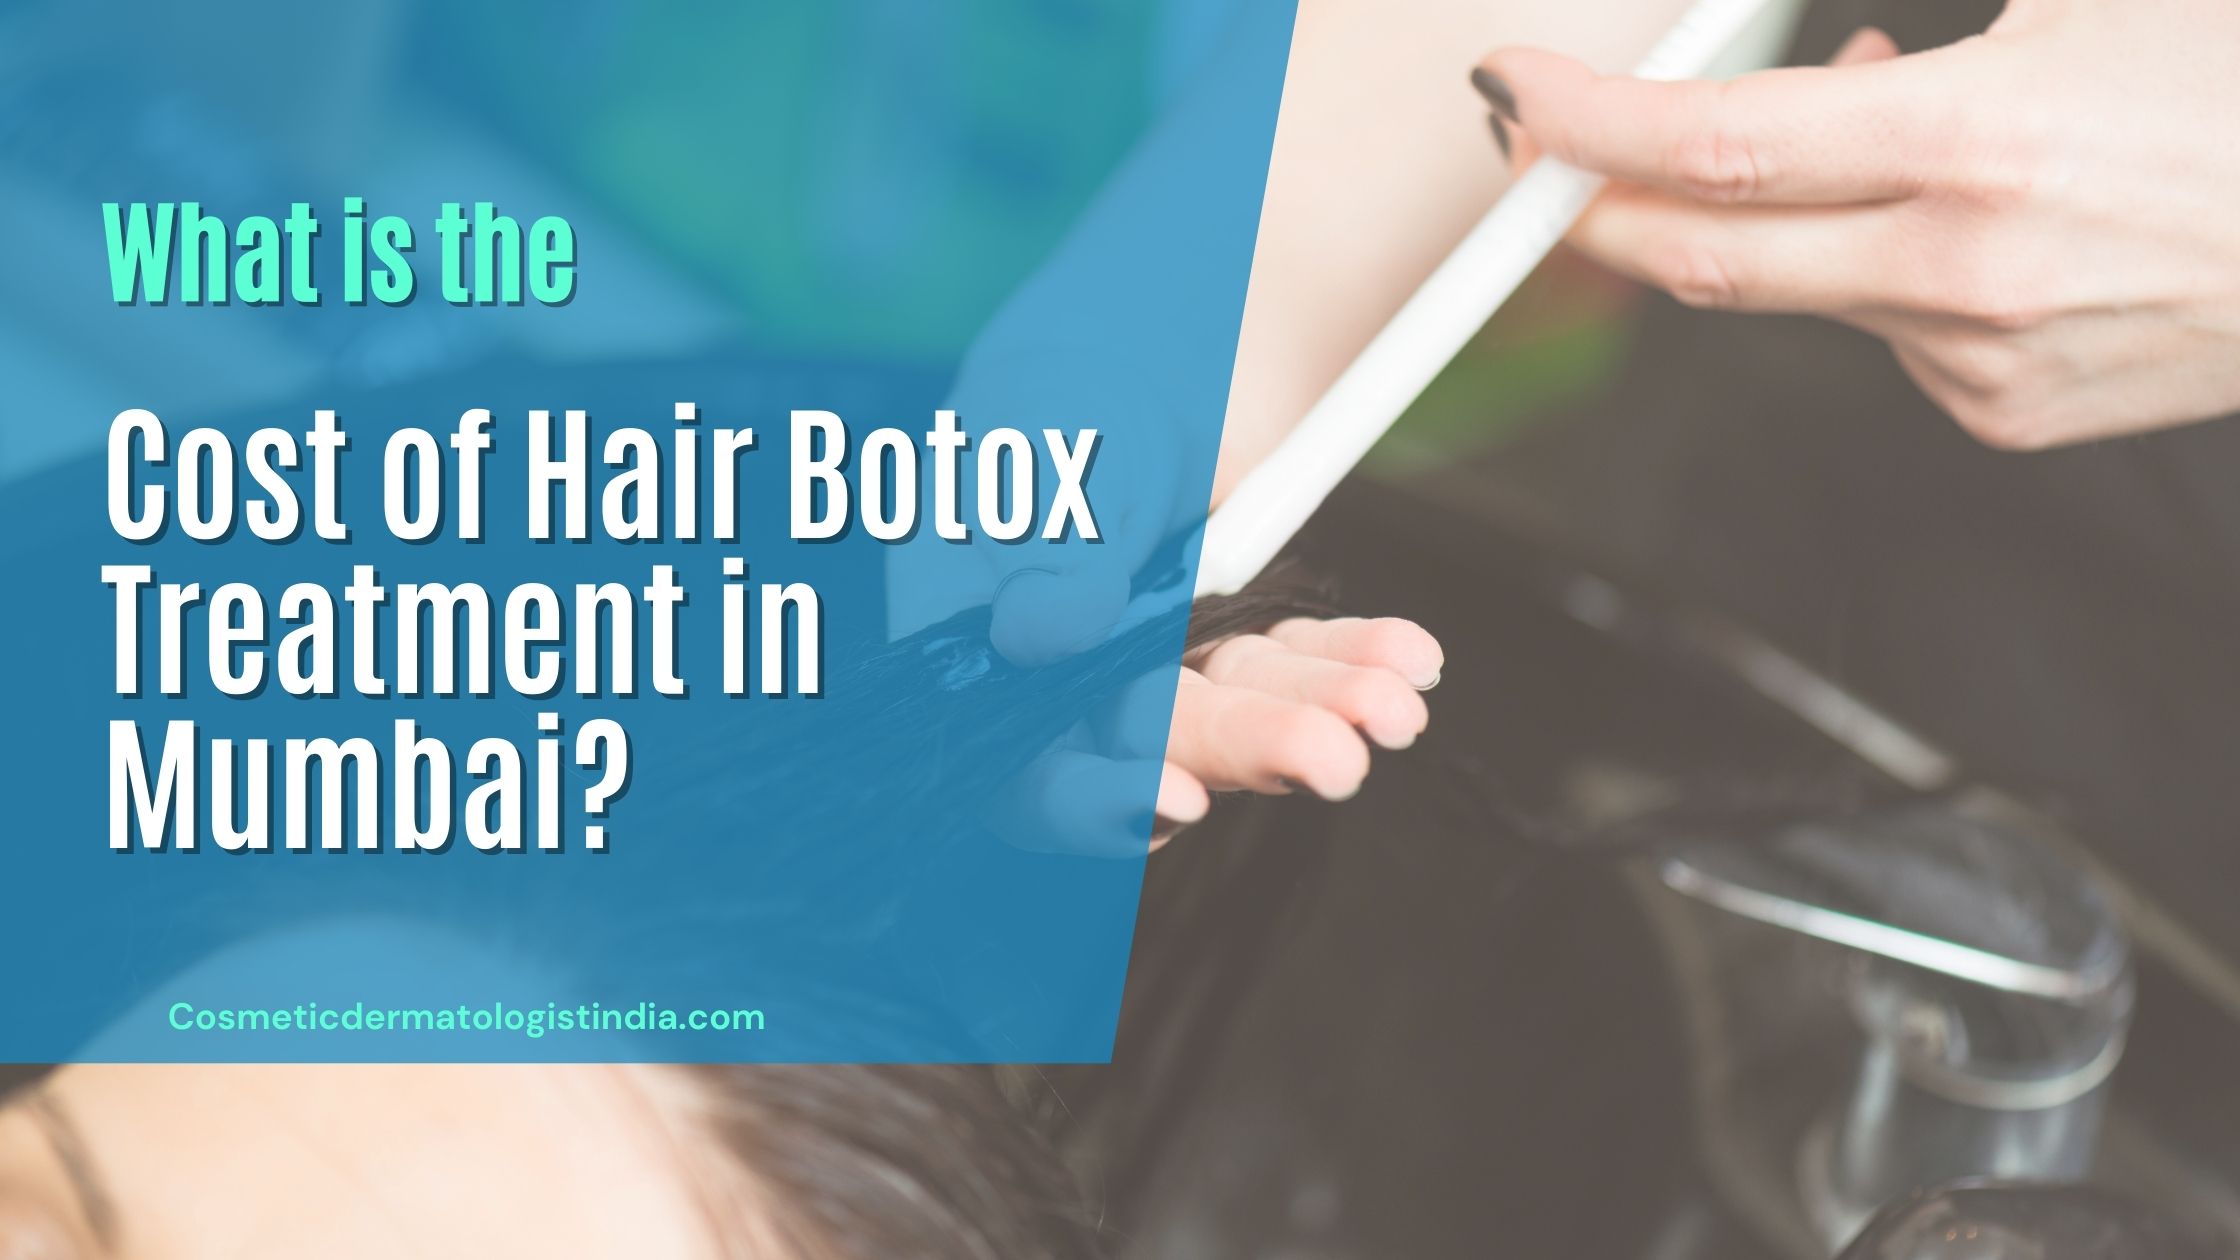 Hair Botox Treatment Cost in Mumbai